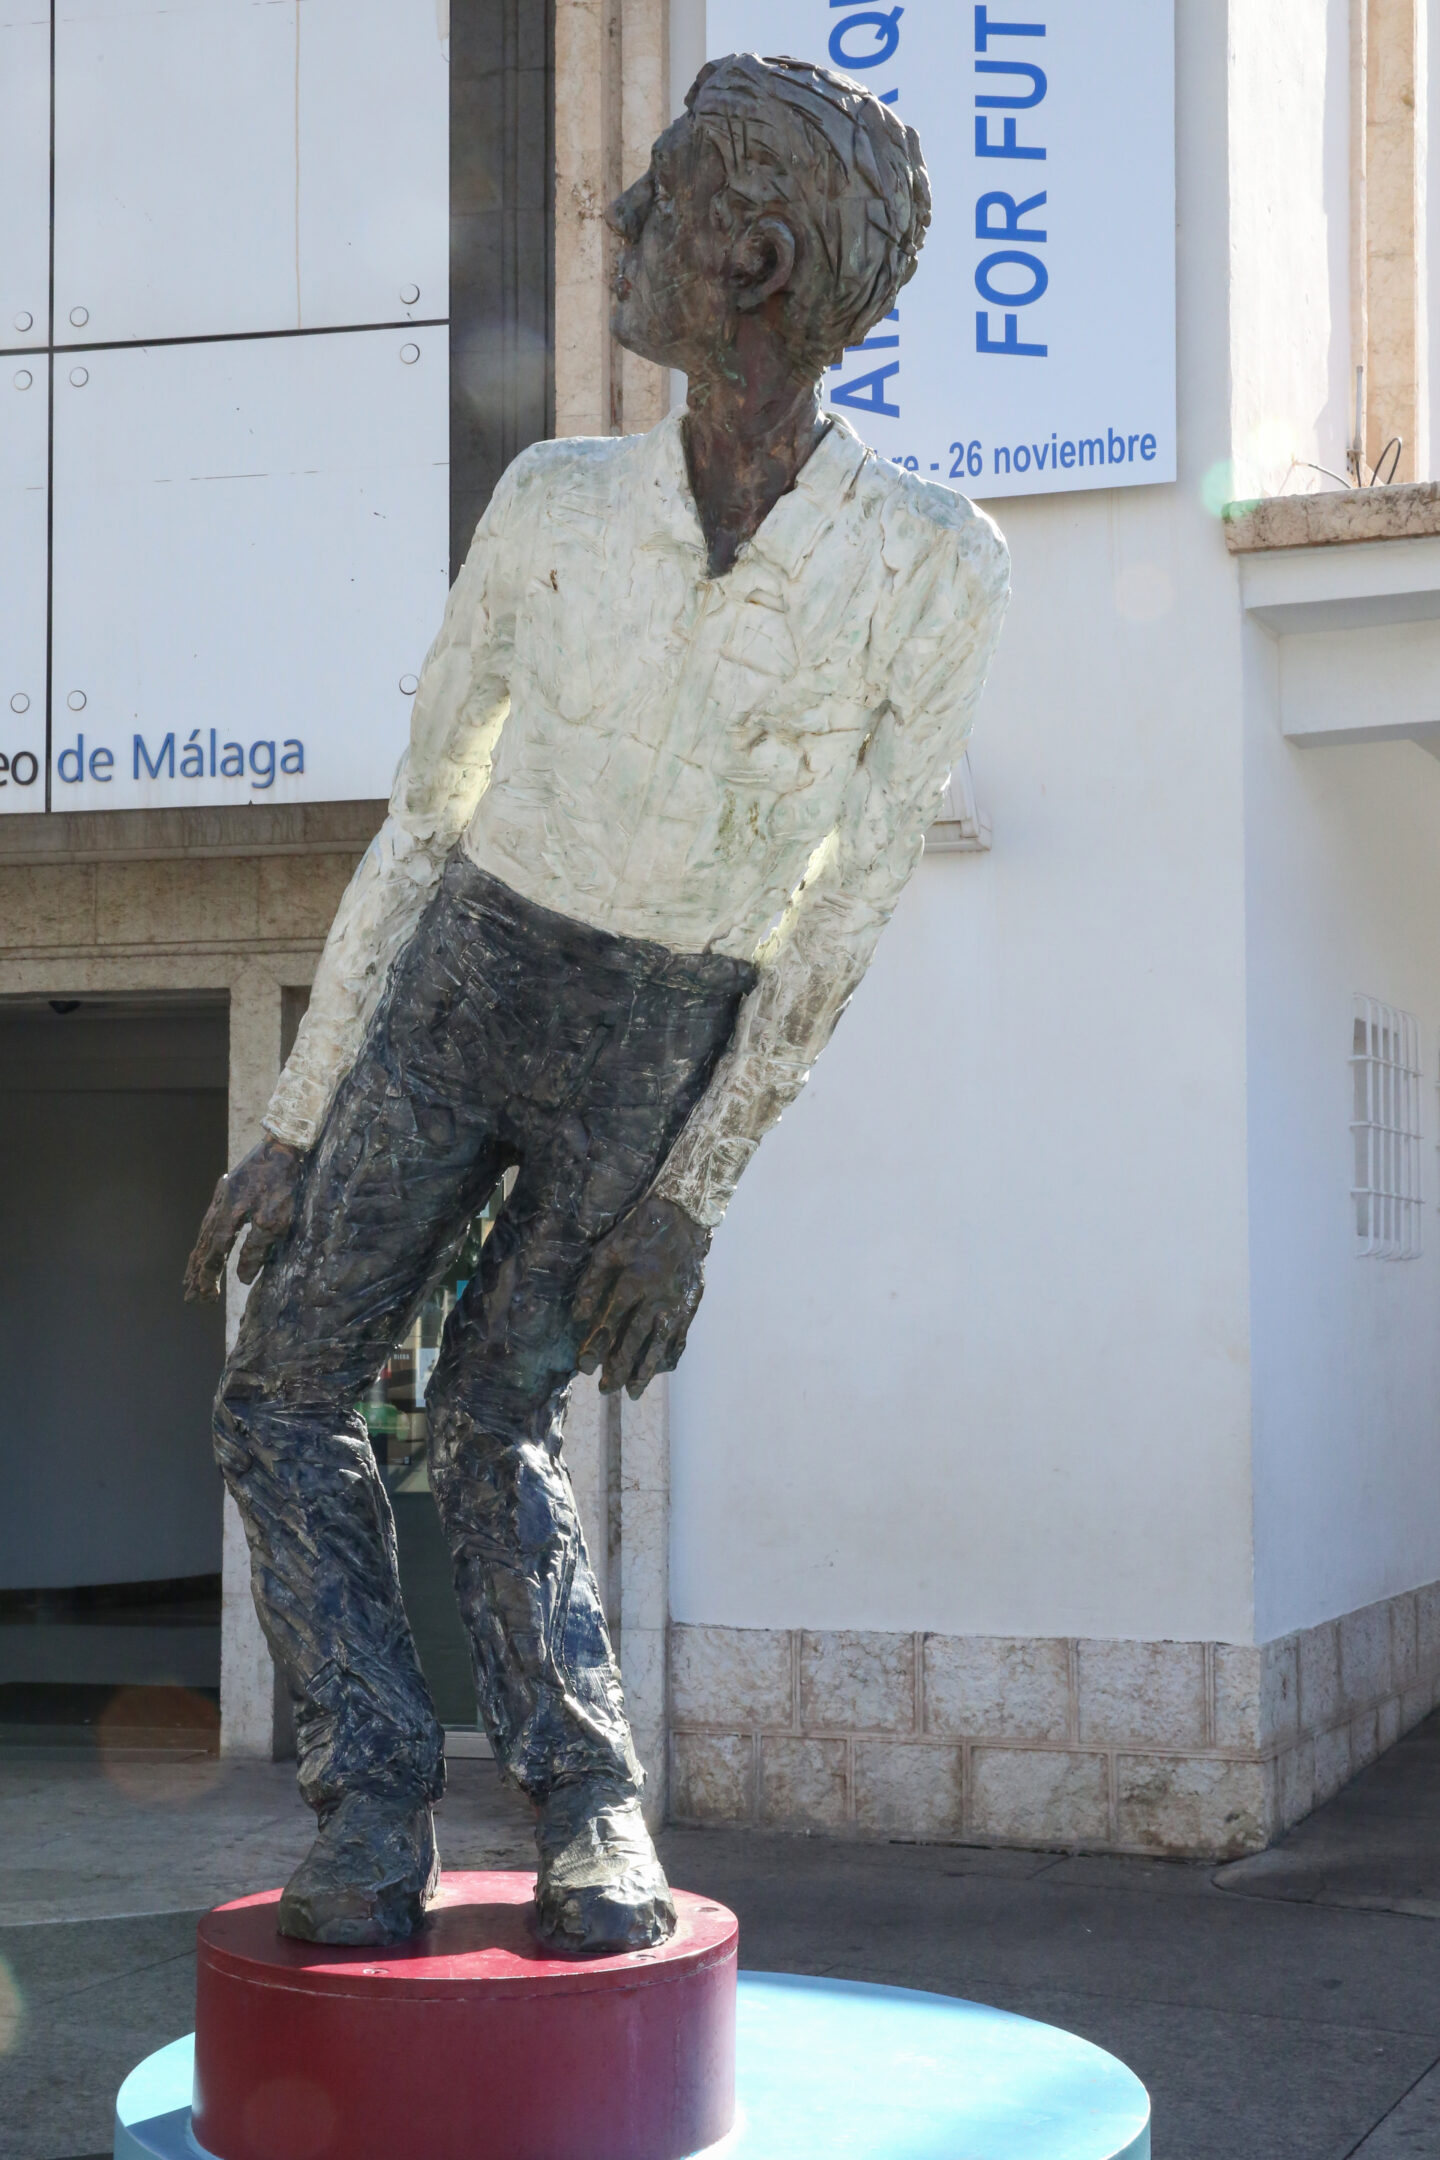 CAC Málaga: Ein zeitgenössisches Juwel abseits des Picasso-Schattens, Skulptur Stephan Balkenhol